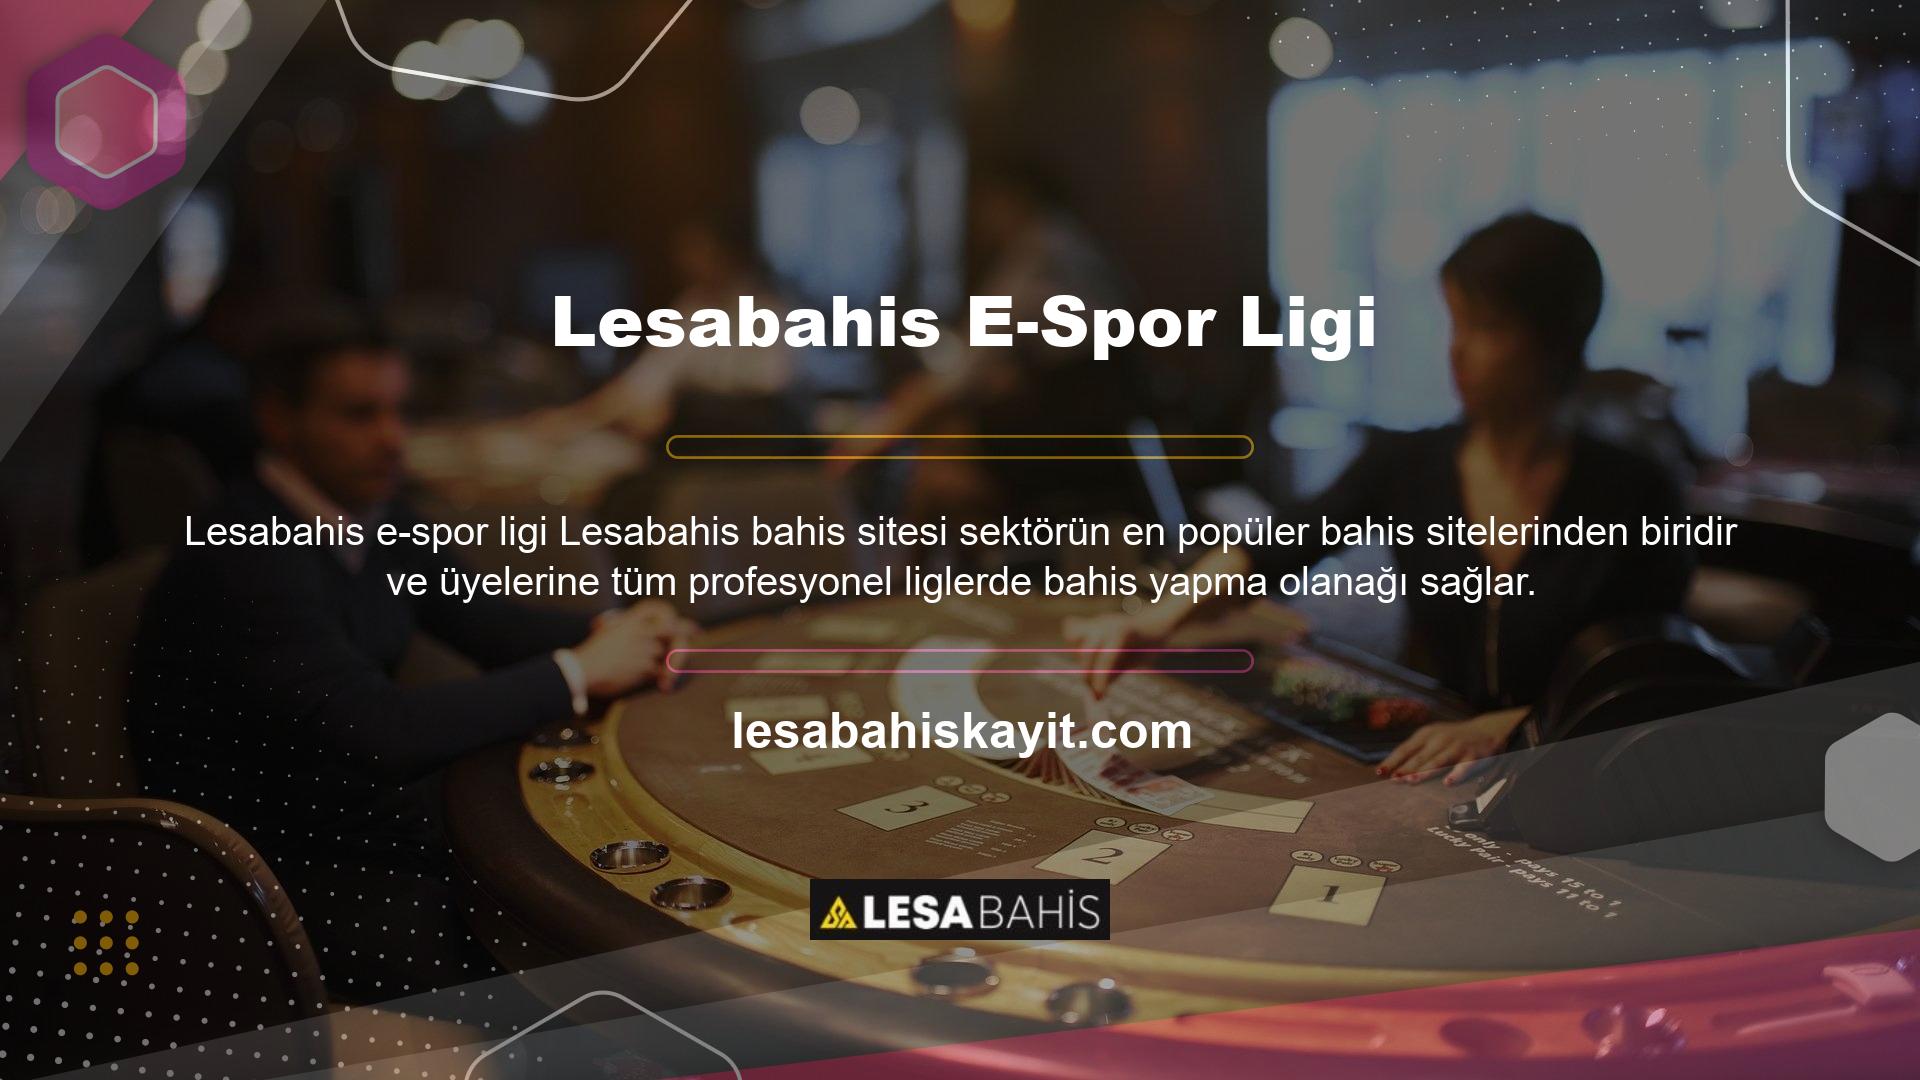 Bahis sitesi Lesabahis, kullanıcılara spor bahisleri kategorisindeki E-spor liglerinin bir listesini sunar